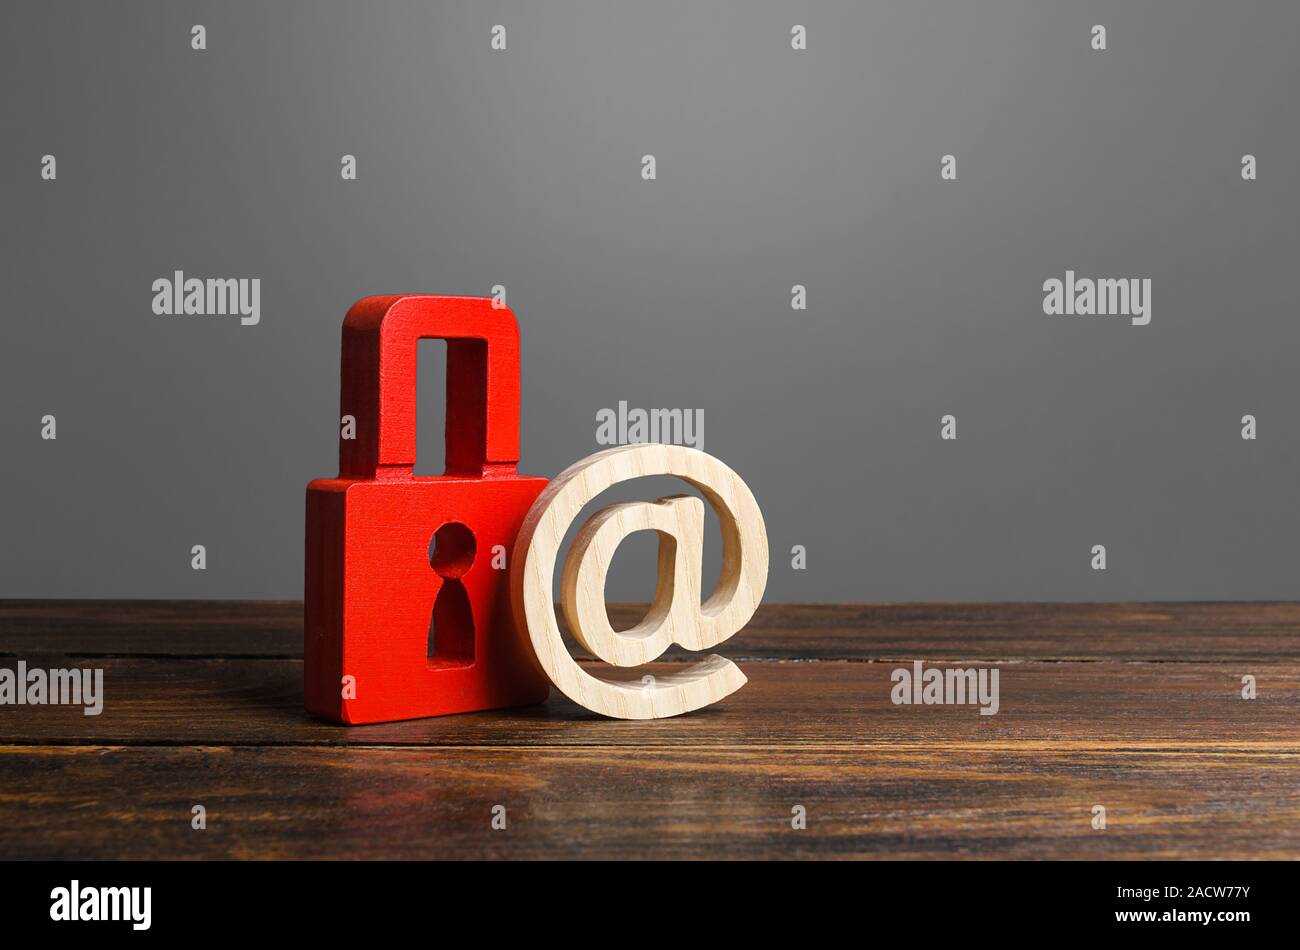 Ein rotes Vorhängeschloss und e-Mail Symbol. Erhaltung der Geheimnisse, Informationen und Werte. Schutz und Versicherung. Hacking Angriff. Sicherheit personenbezogener Daten, Pr Stockfoto